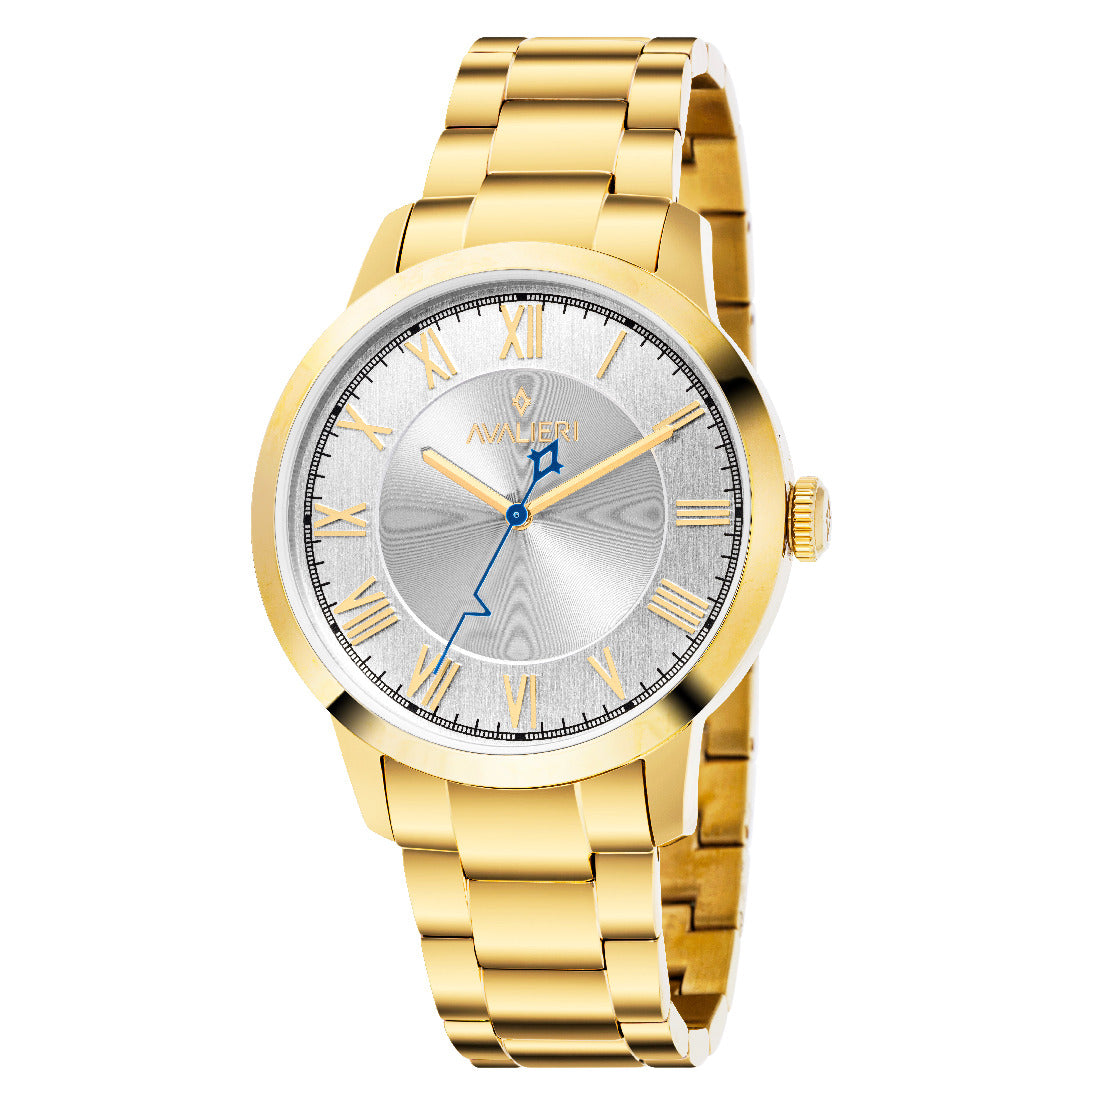 Avalieri Men's Quartz Watch, White Dial - AV-2549B